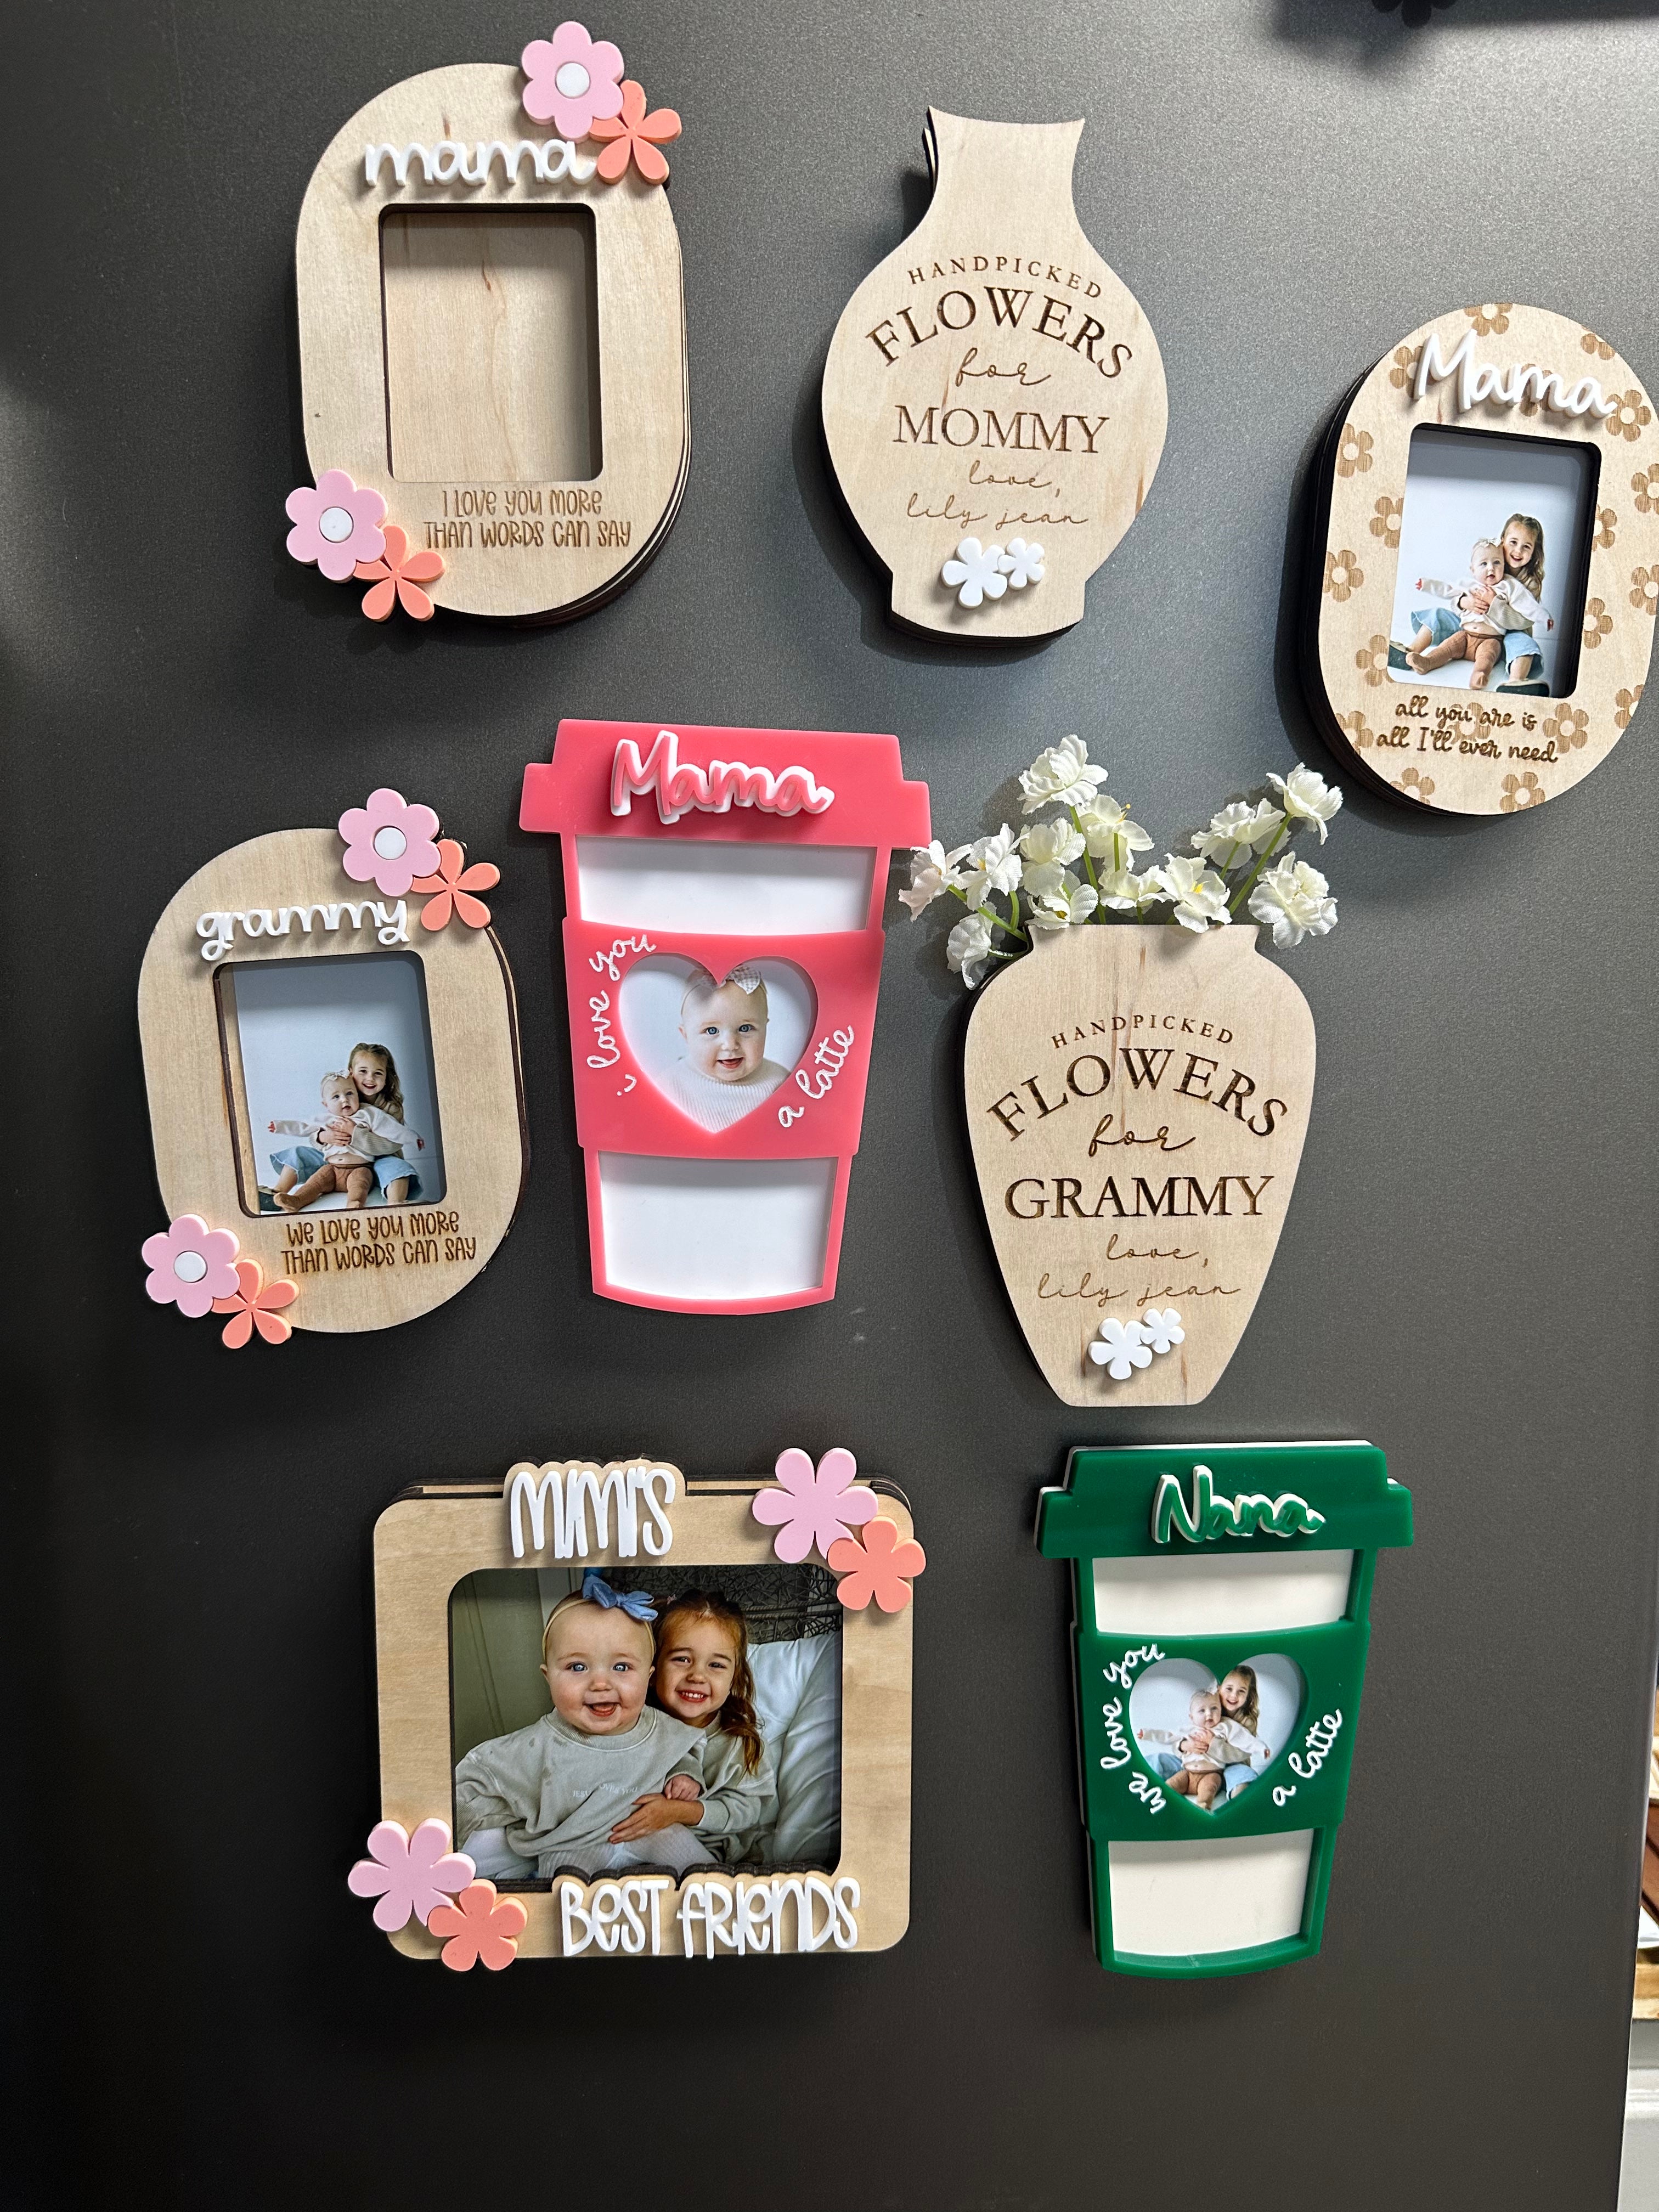 Mother’s Day Flower Vase Magnet | Personalized Flower Vase Magnet